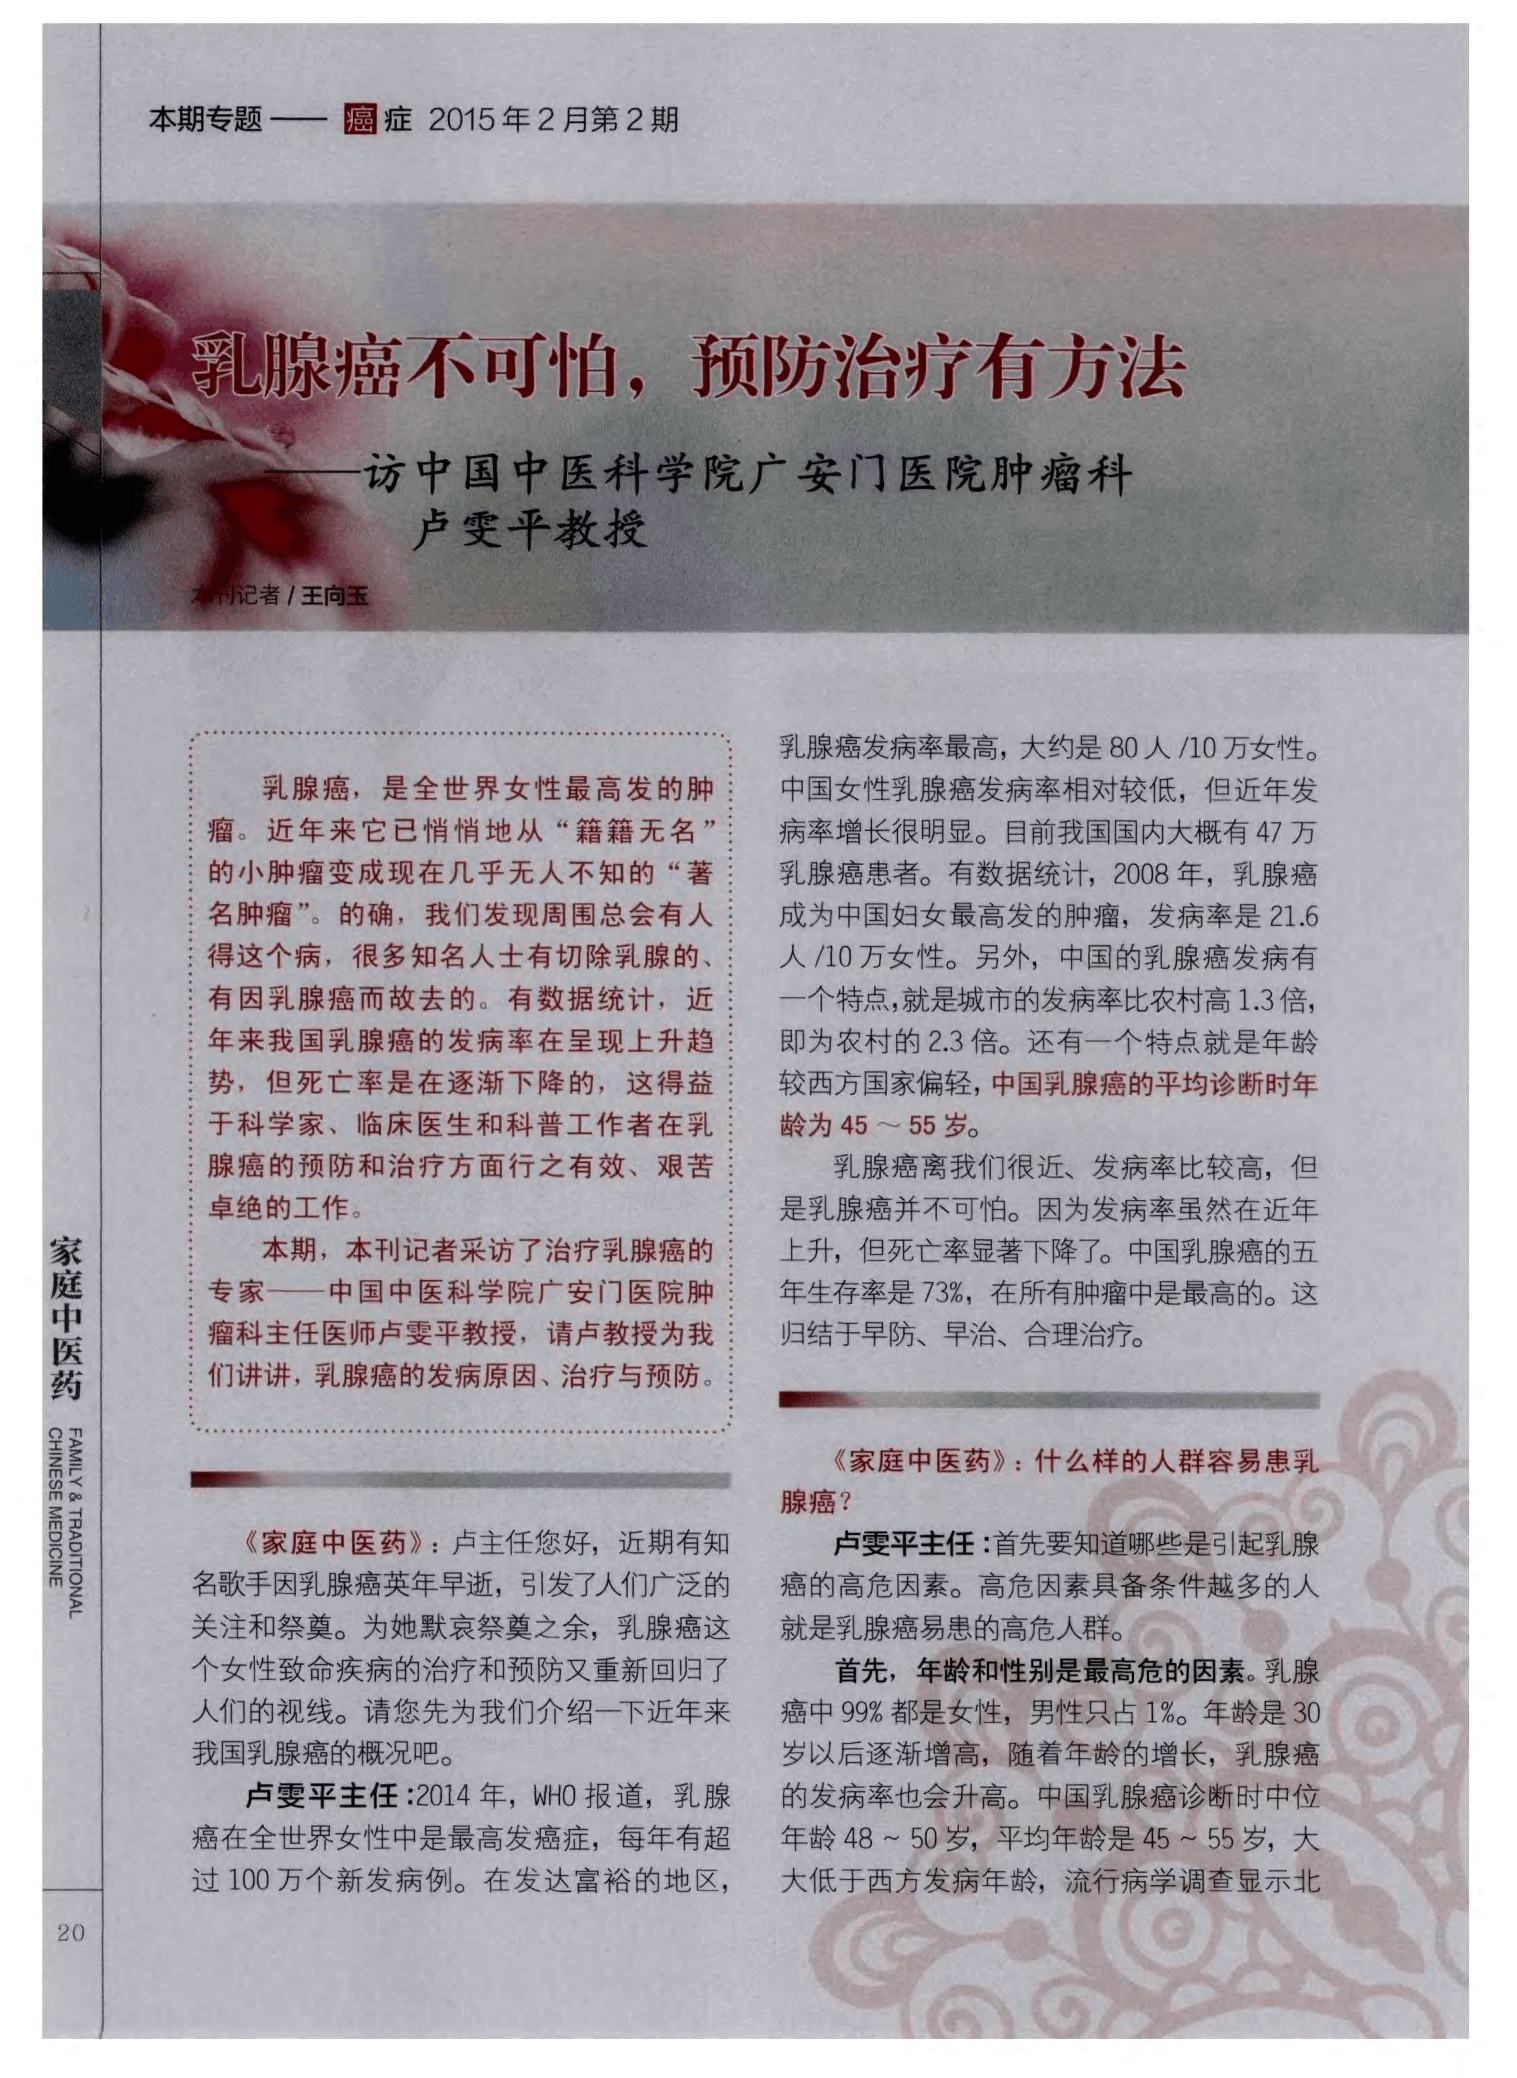 中国中医科学院广安门医院黄牛票贩子号贩子联系电话的简单介绍